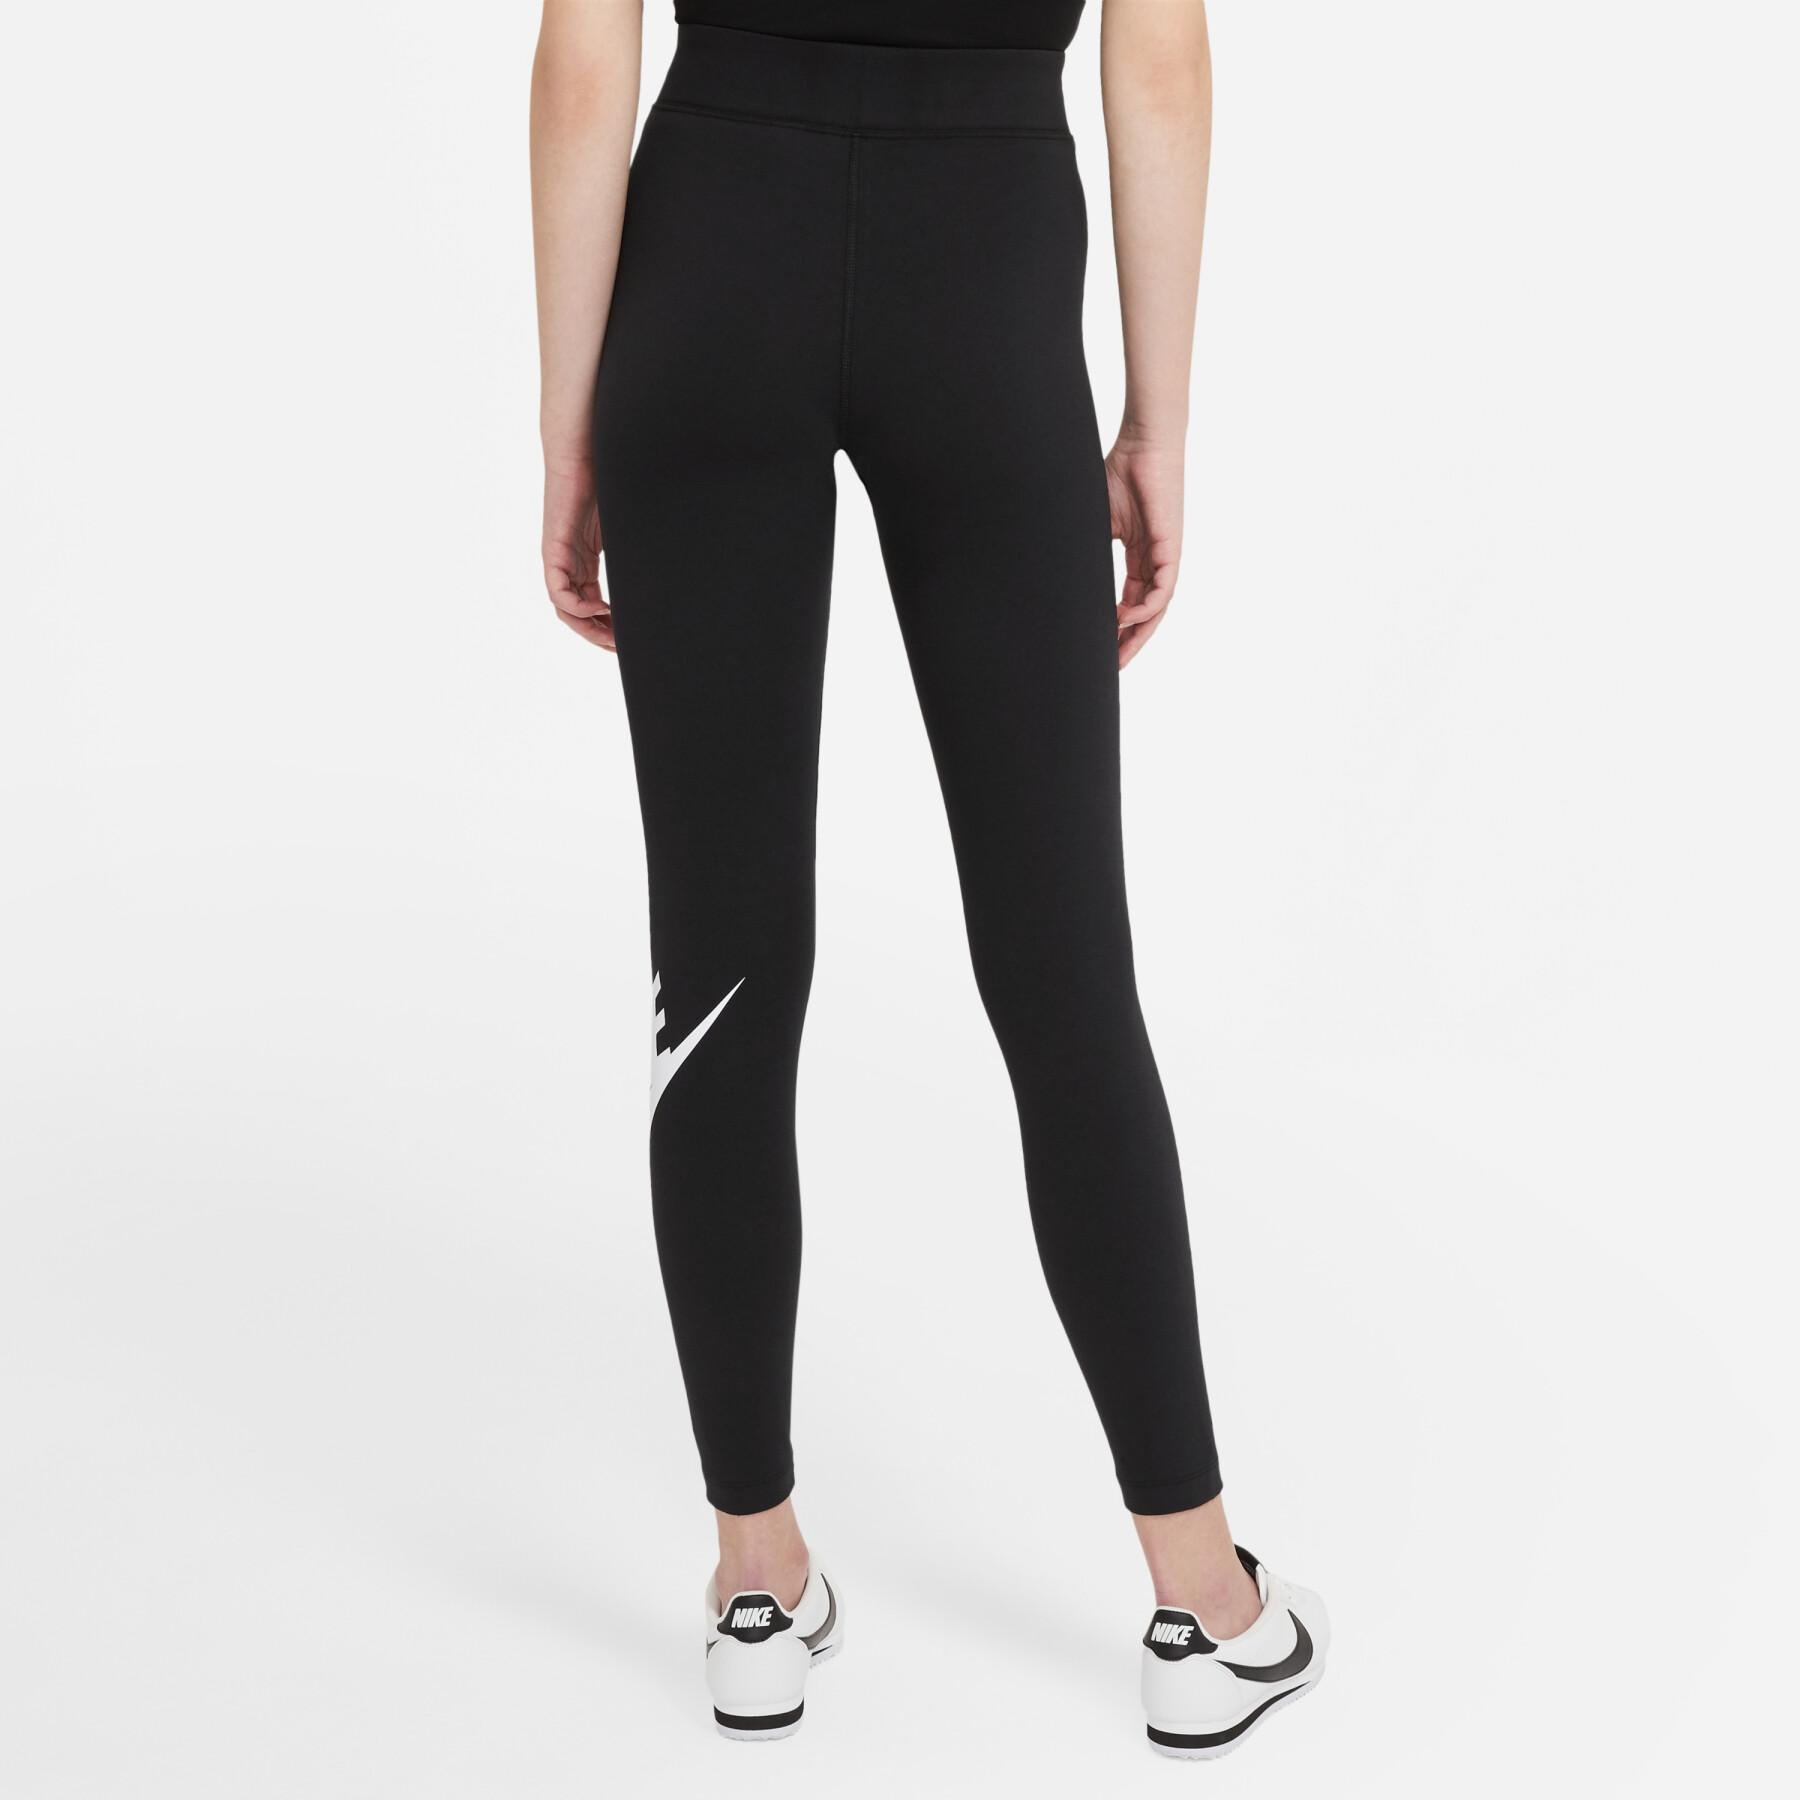 Women's Legging Nike sportswear essential - Women's clothing